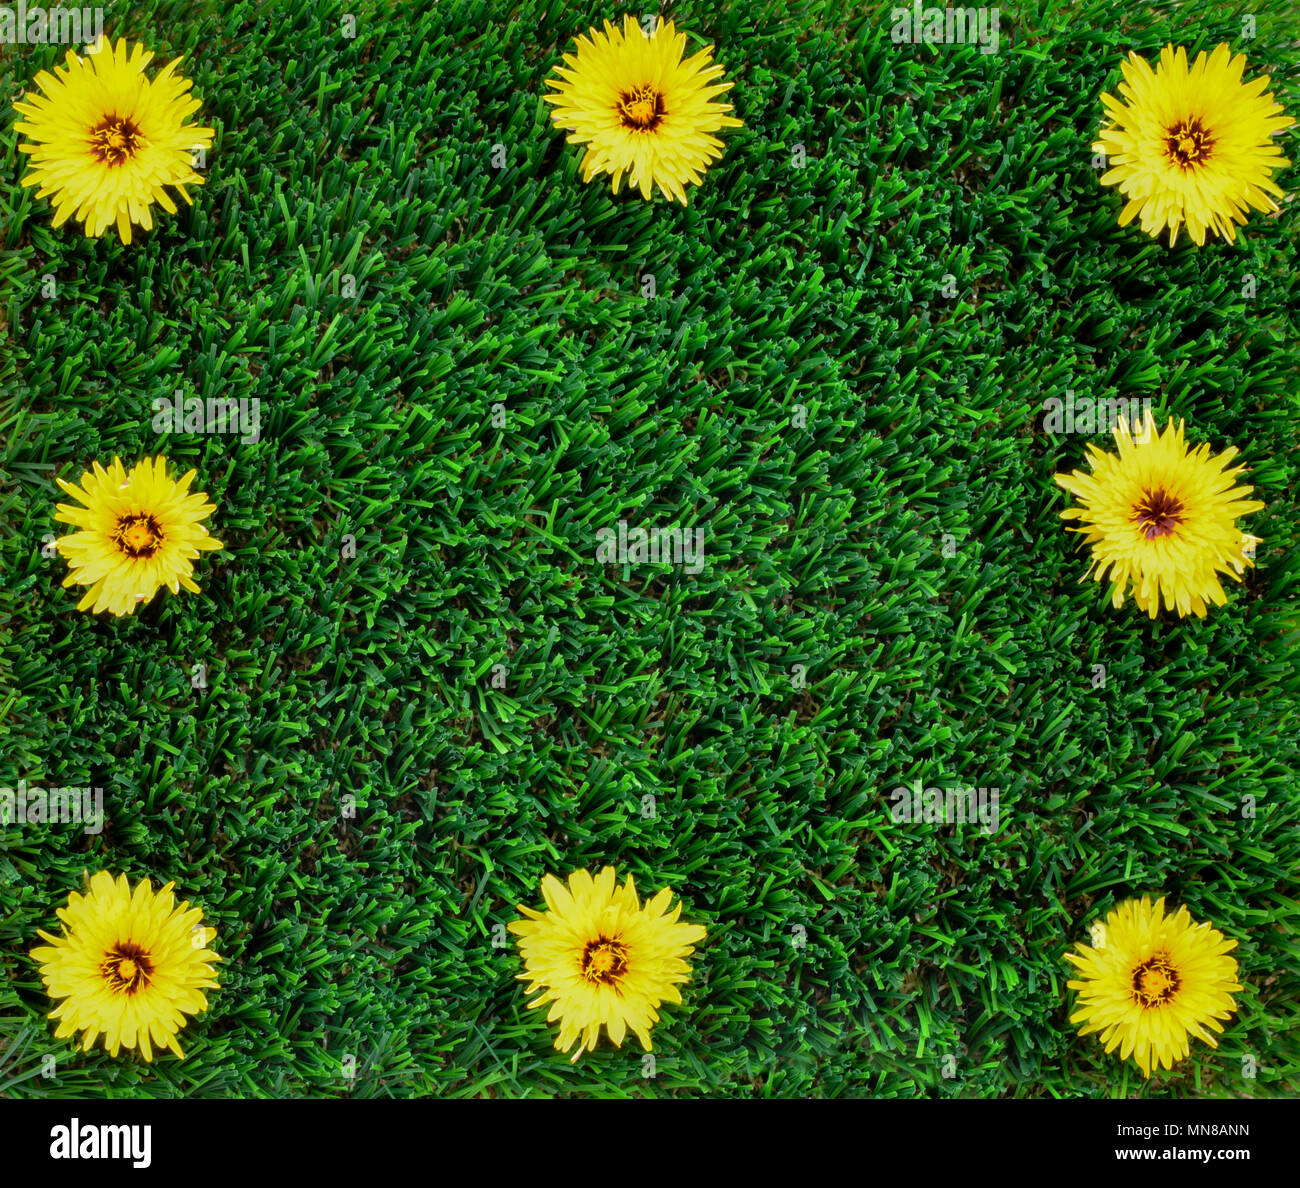 Copia di sfondo spazio per il concetto di no le erbacce nel giardino ,graziosi fiori gialli su erba artificiale rendendo un telaio per il testo, marketing e adve Foto Stock